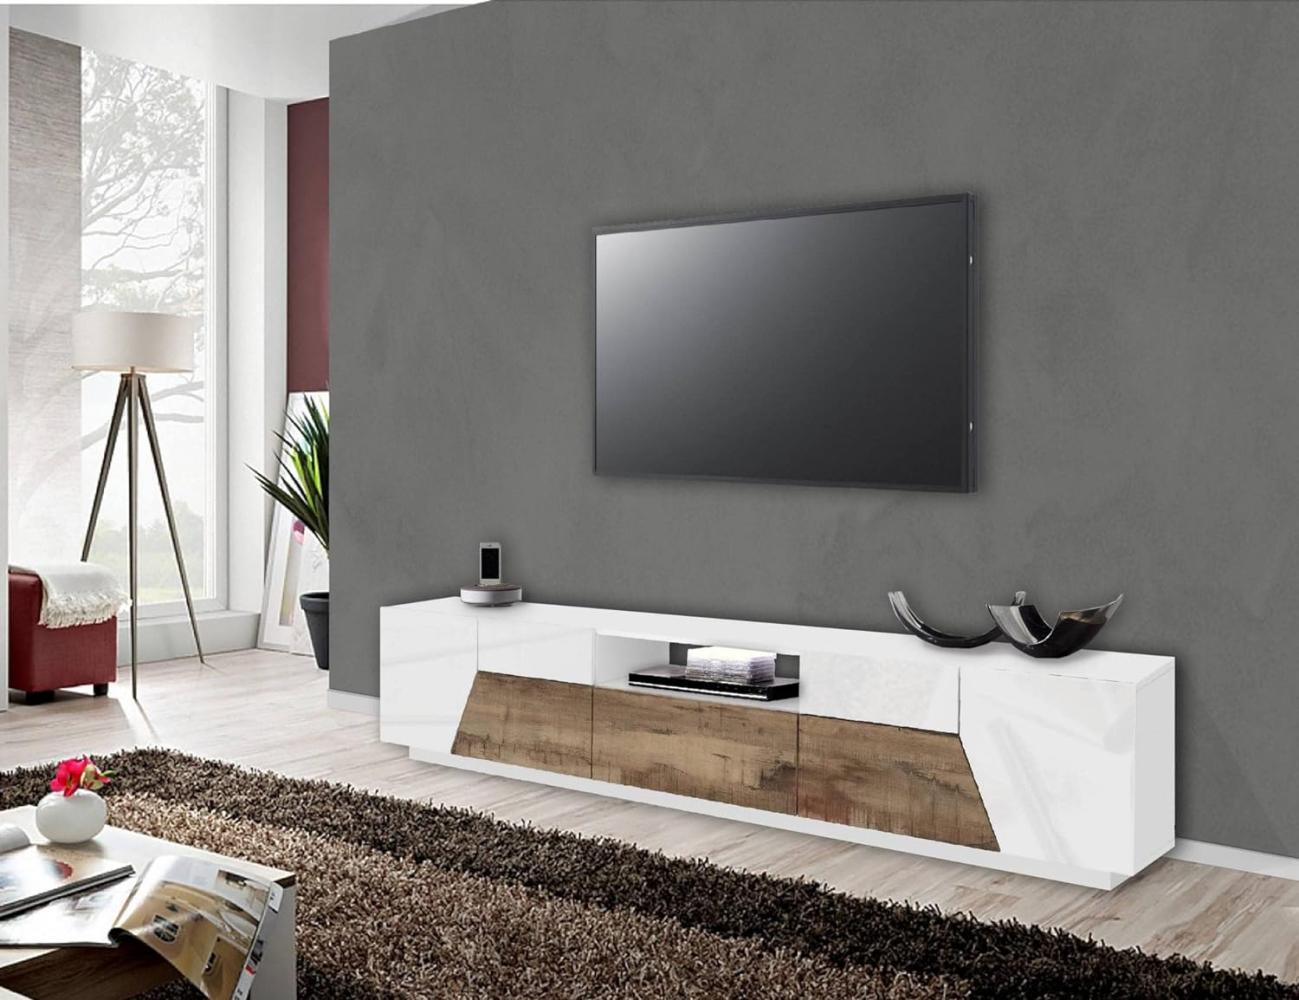 Dmora - Fernsehschrank Jacopo, Niedriges Sideboard für Wohnzimmer, Sockel für TV-Möbel, 100 % Made in Italy, cm 220x43h46, Weiß glänzend und Ahorn Bild 1